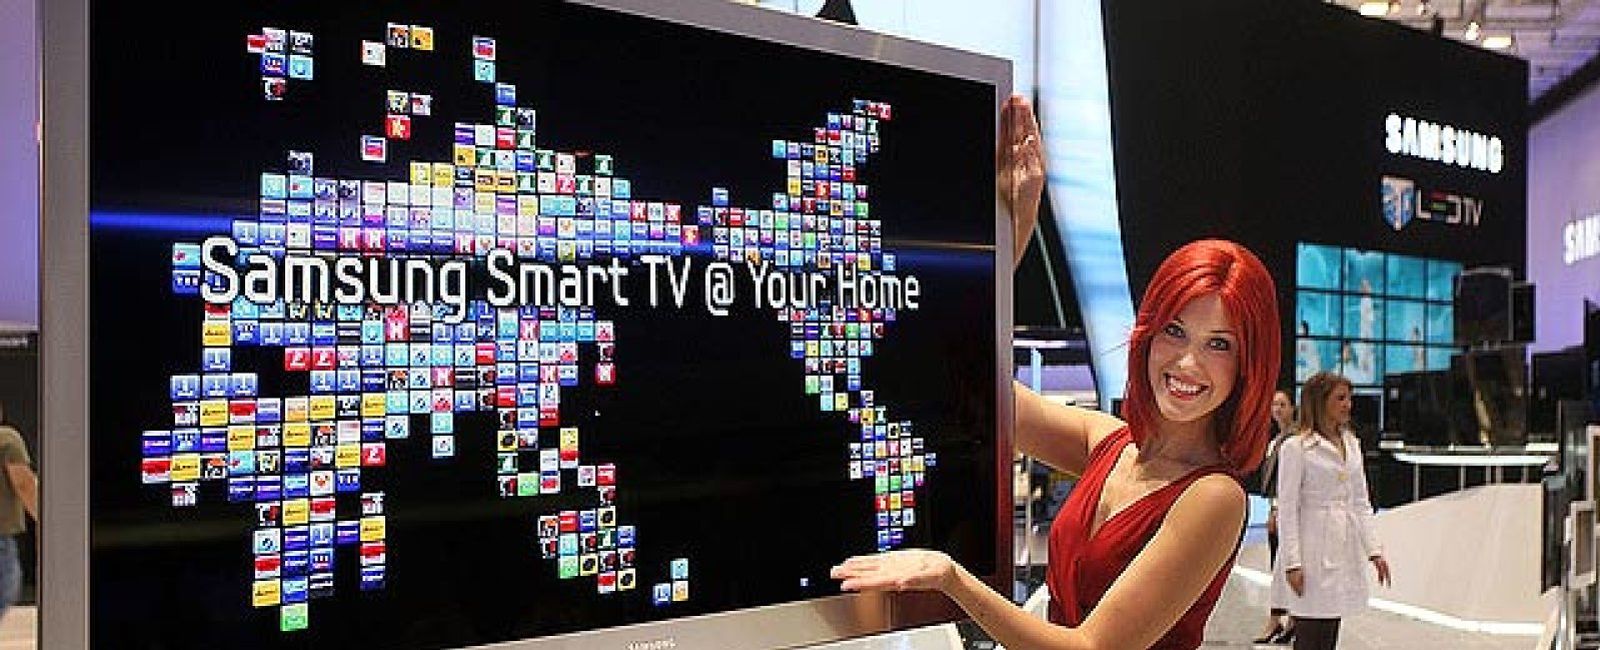 Foto: Las televisiones inteligentes traen consigo un repunte de ciberataques